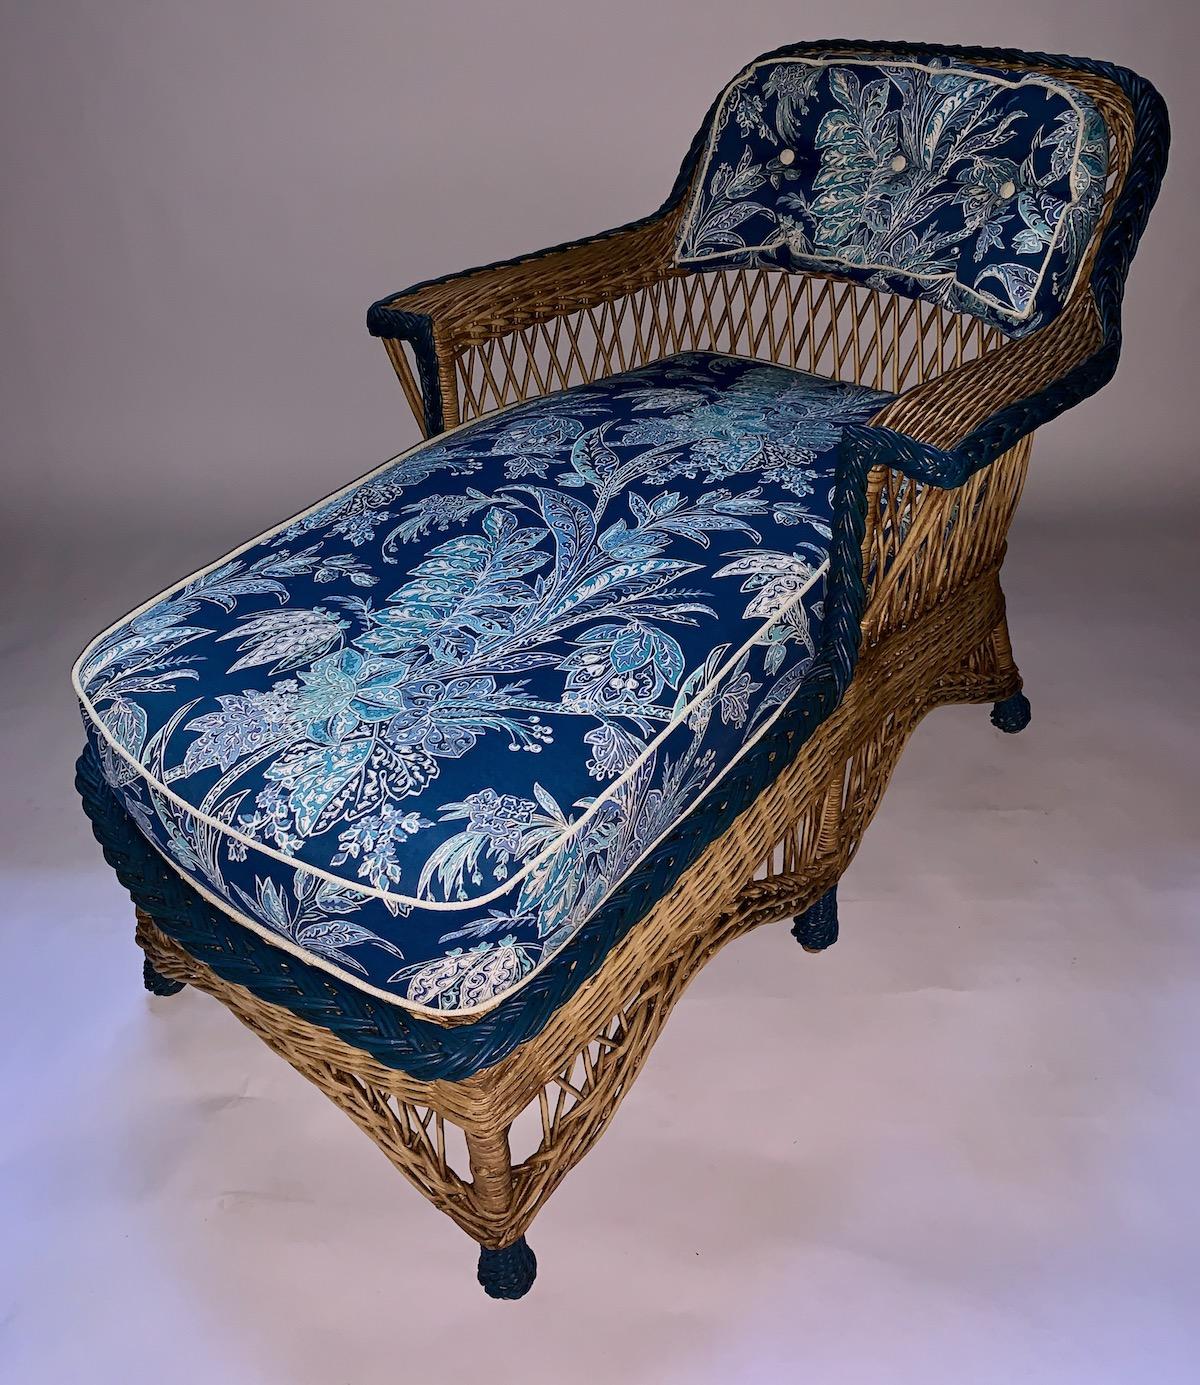 Magnifique chaise longue en roseau et rotin de couleur naturelle avec un galon bleu marine continu autour du dossier, des accoudoirs et de l'assise, américaine, C. 1910 par la Heywood Wakefield Company de Gardner Ma. La pièce parfaite pour votre